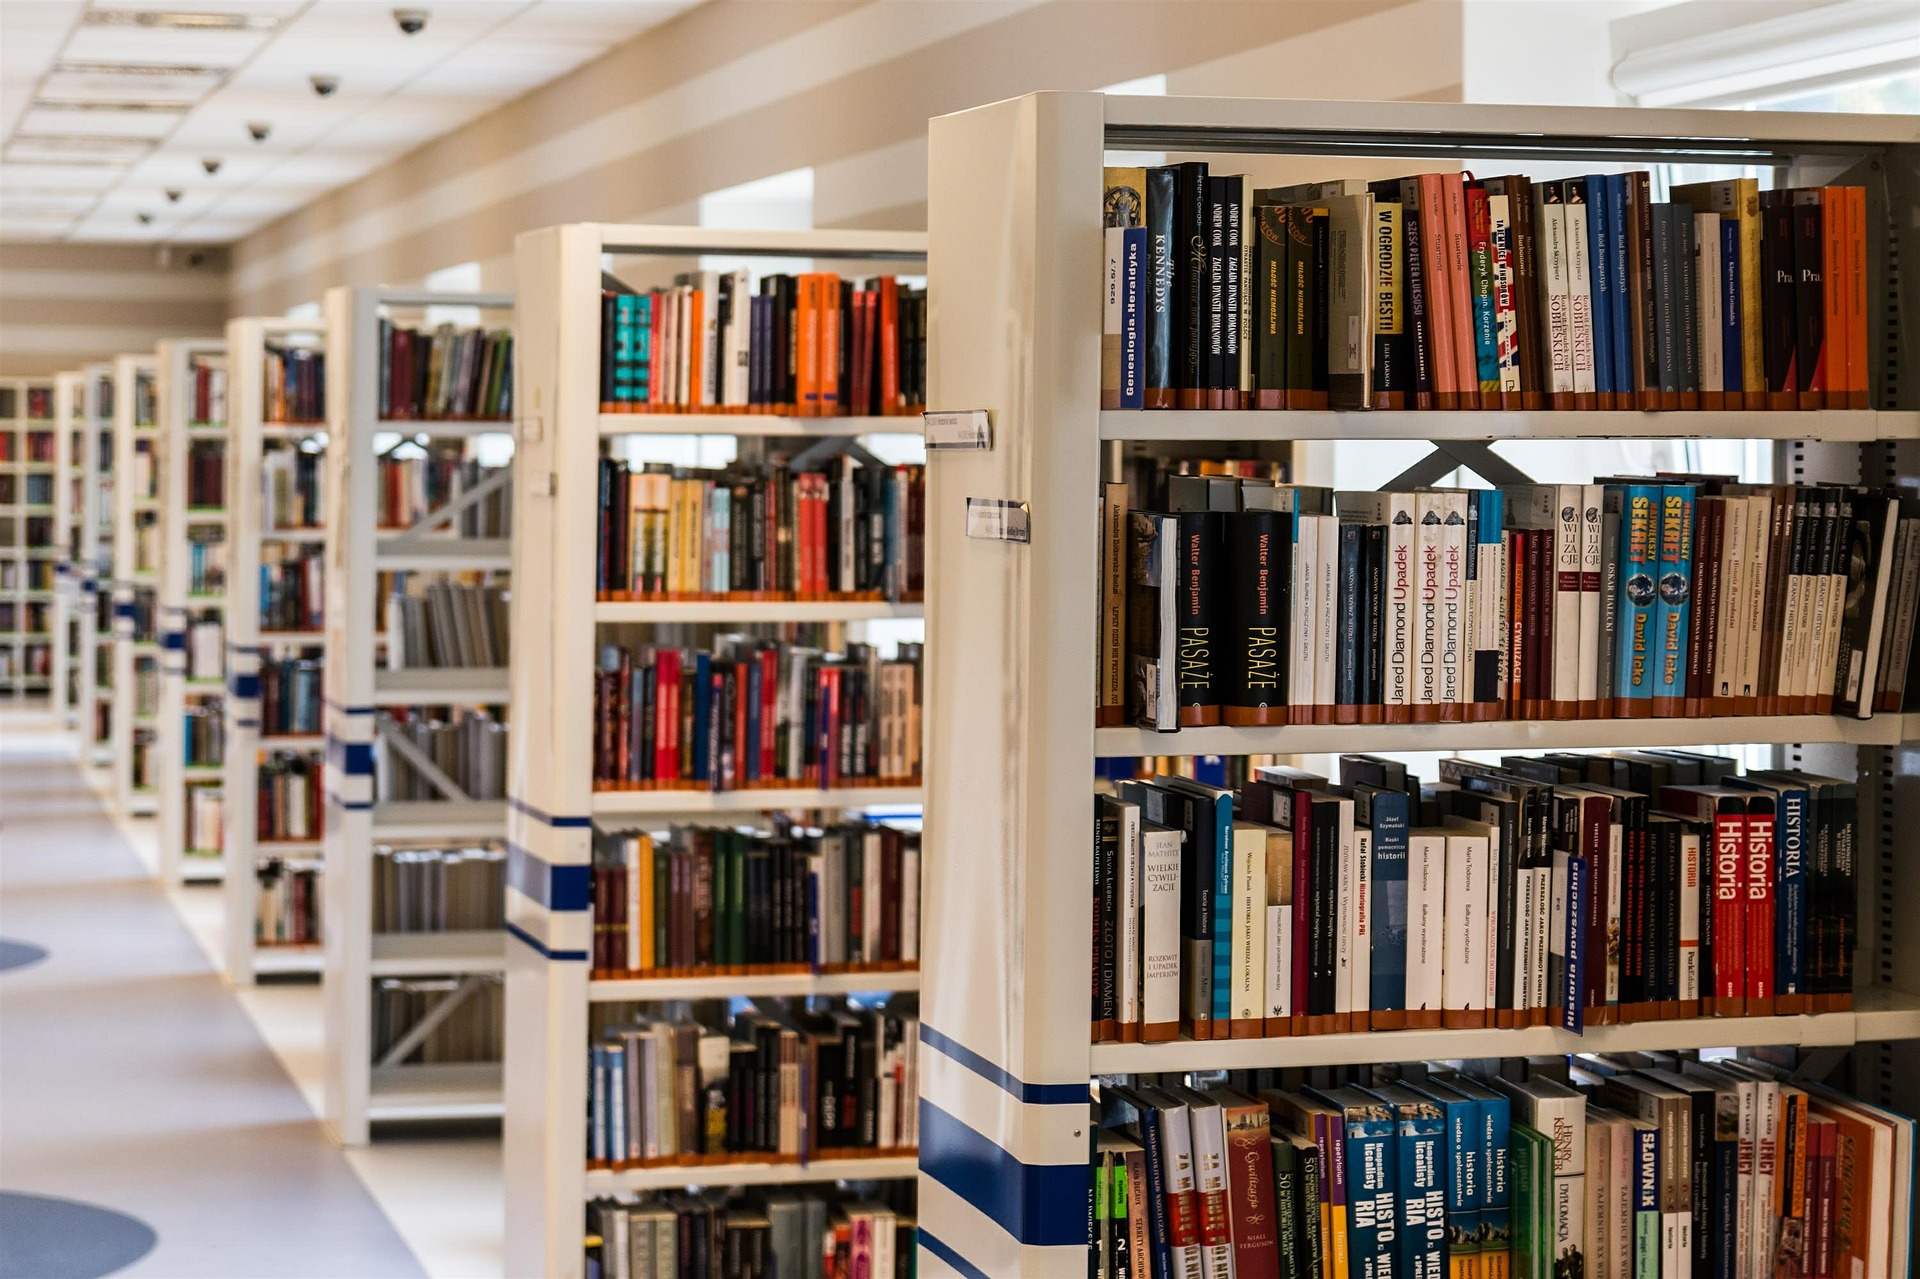 Biblioteki mogą stać się bardziej przyjazne dla osób z dysfunkcją wzroku